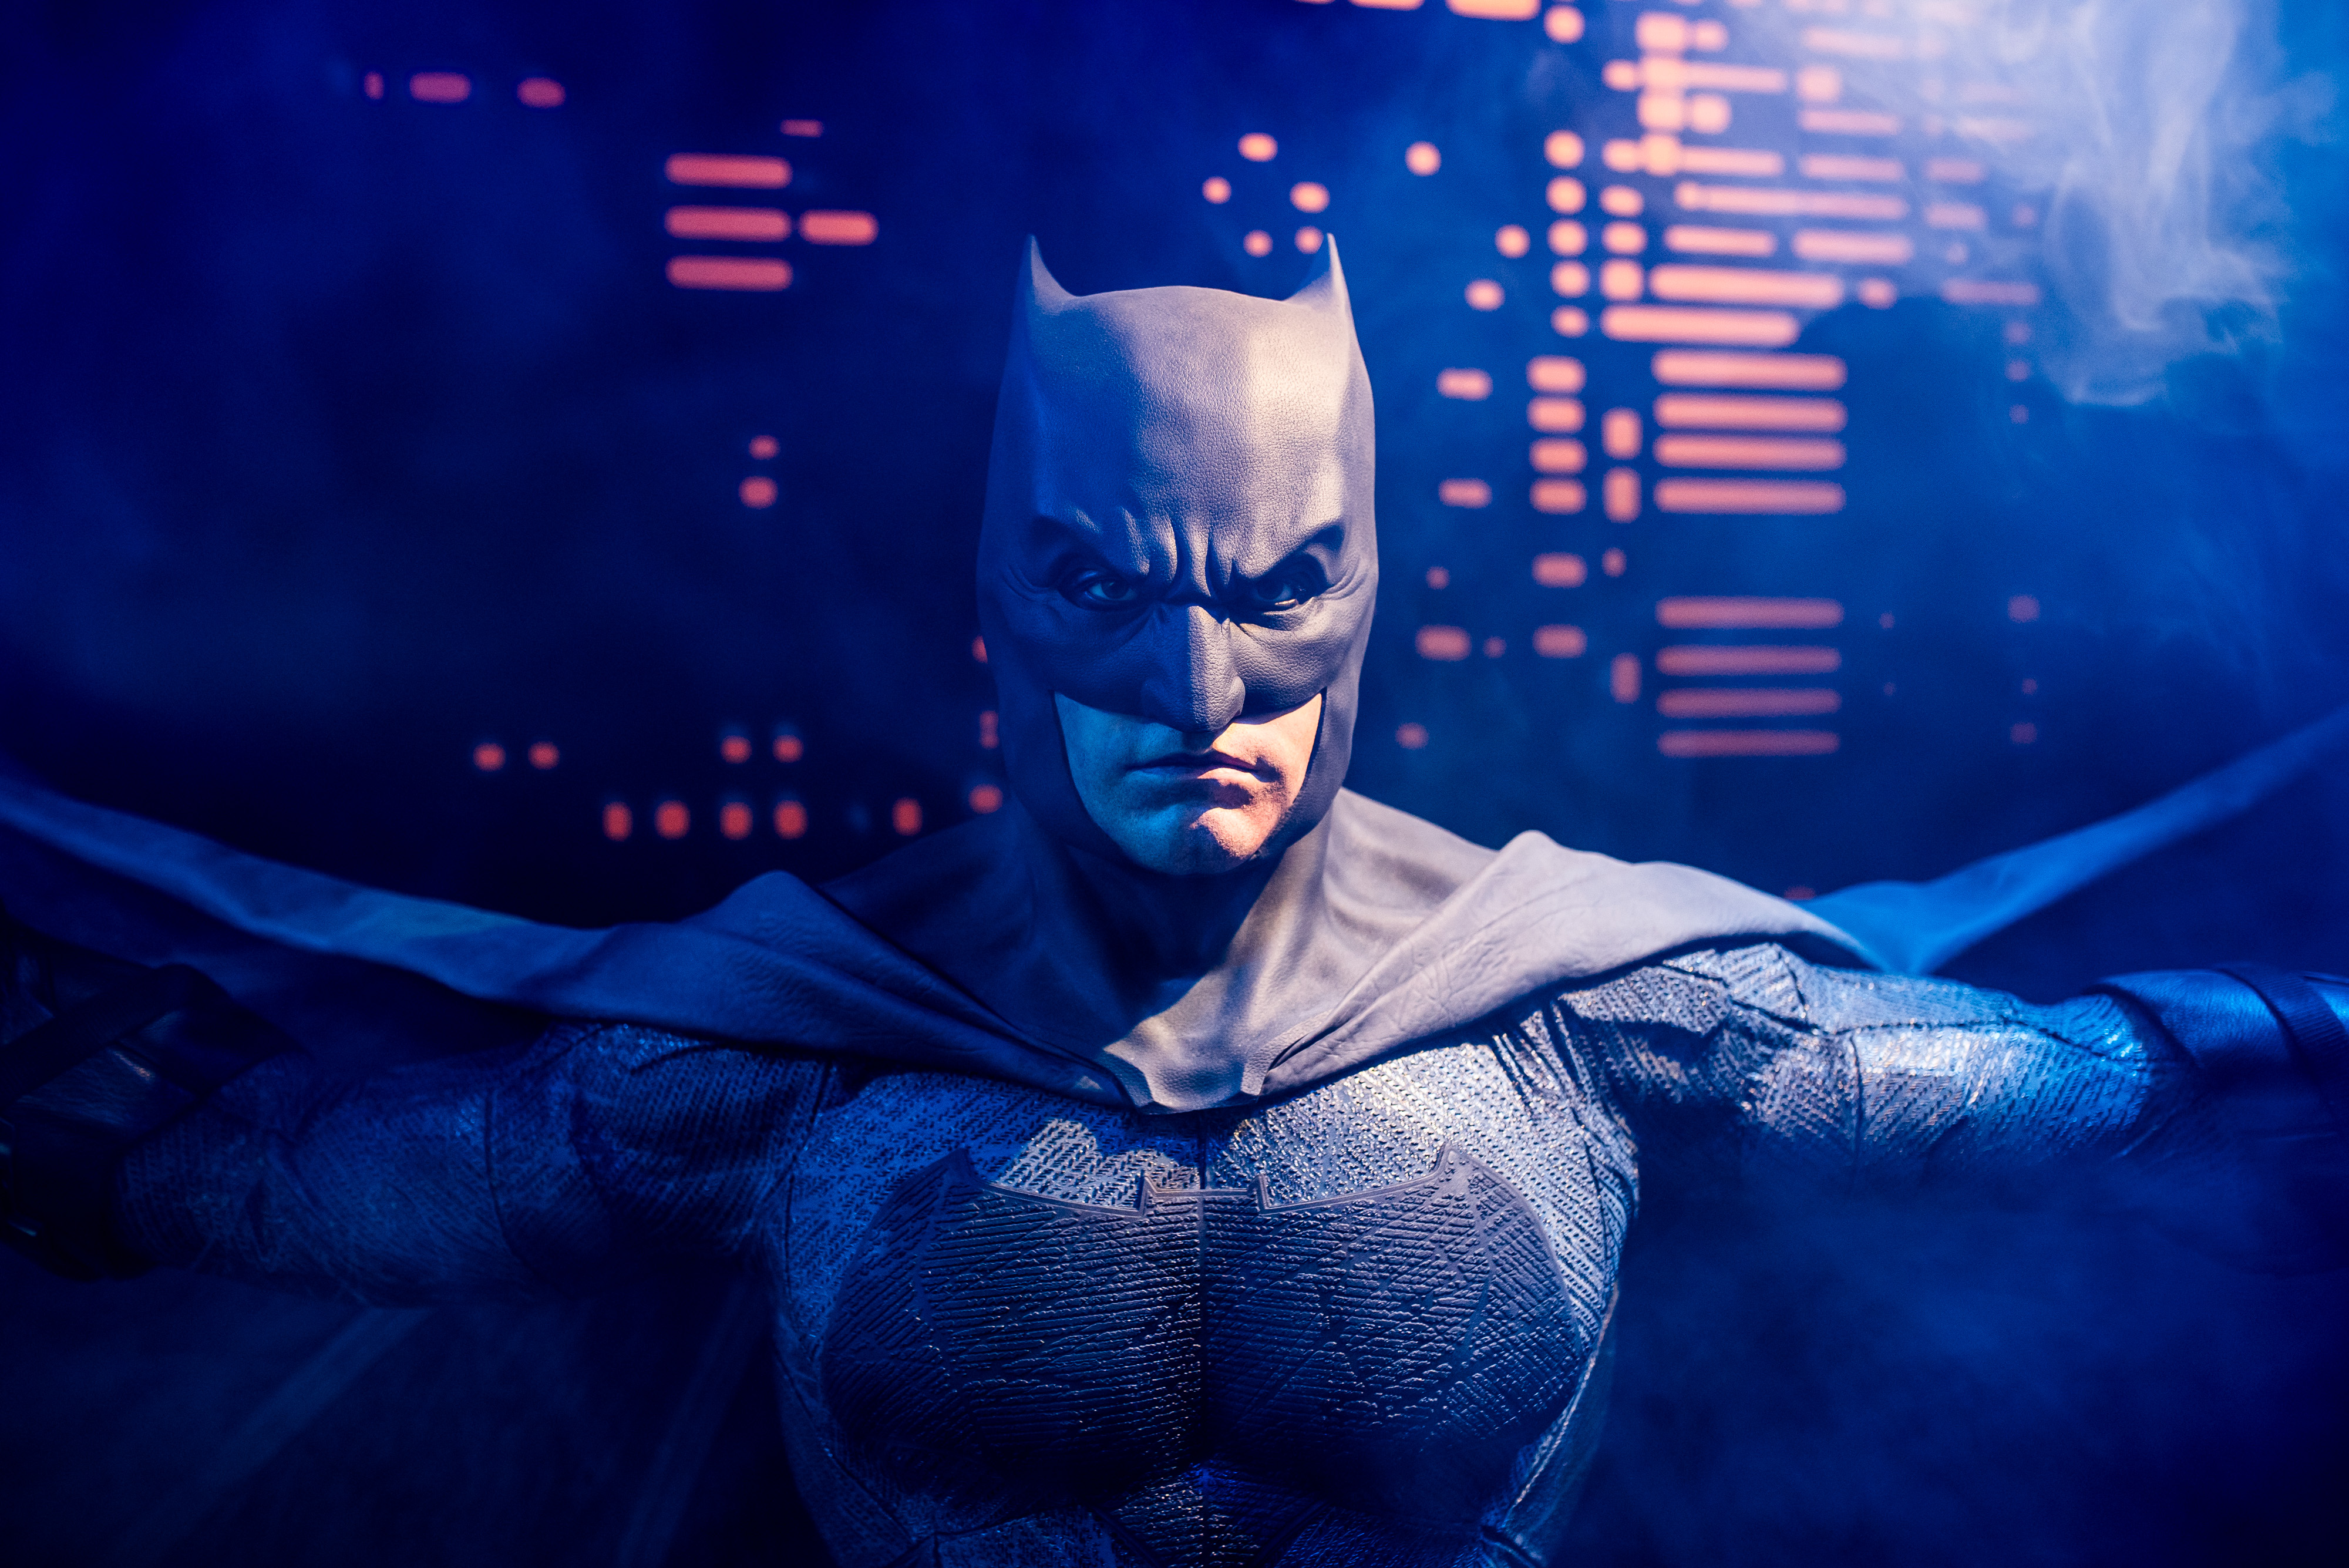 batman in blue light